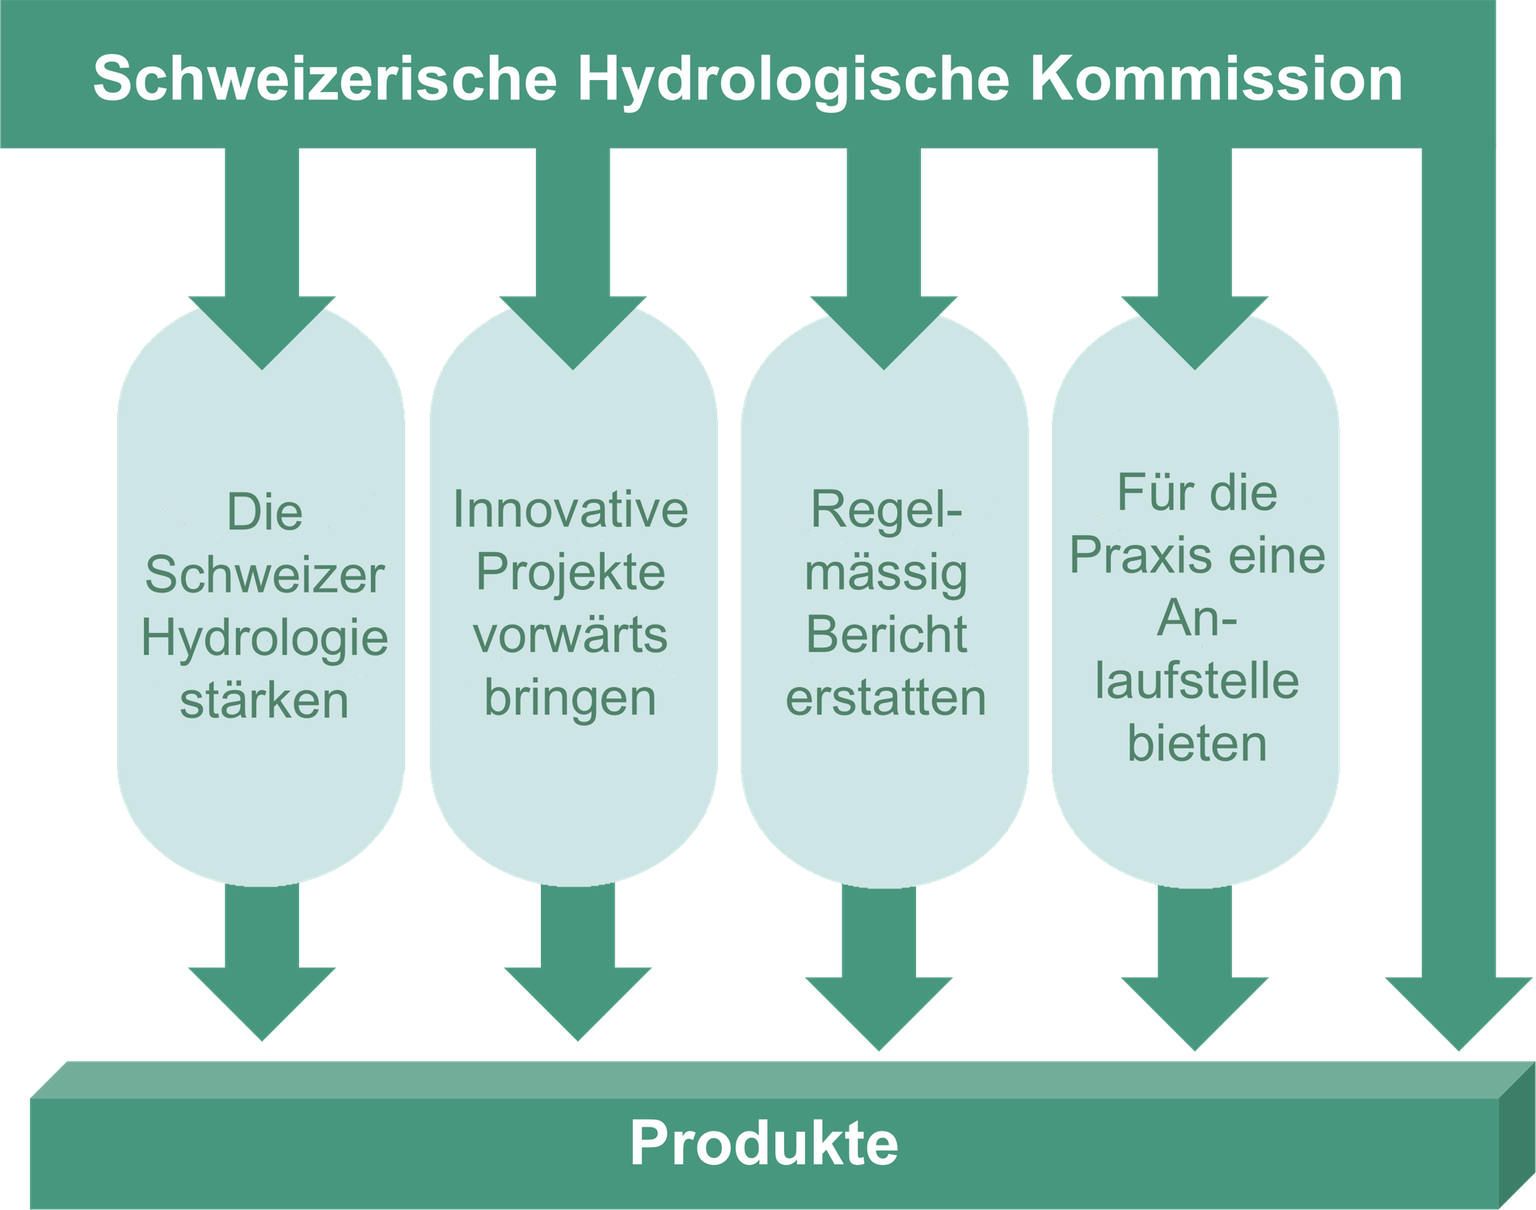 Das Vier-Pfeiler-Modell zur Umsetzung der Ziele und Aufgaben der Hydrologischen Kommission